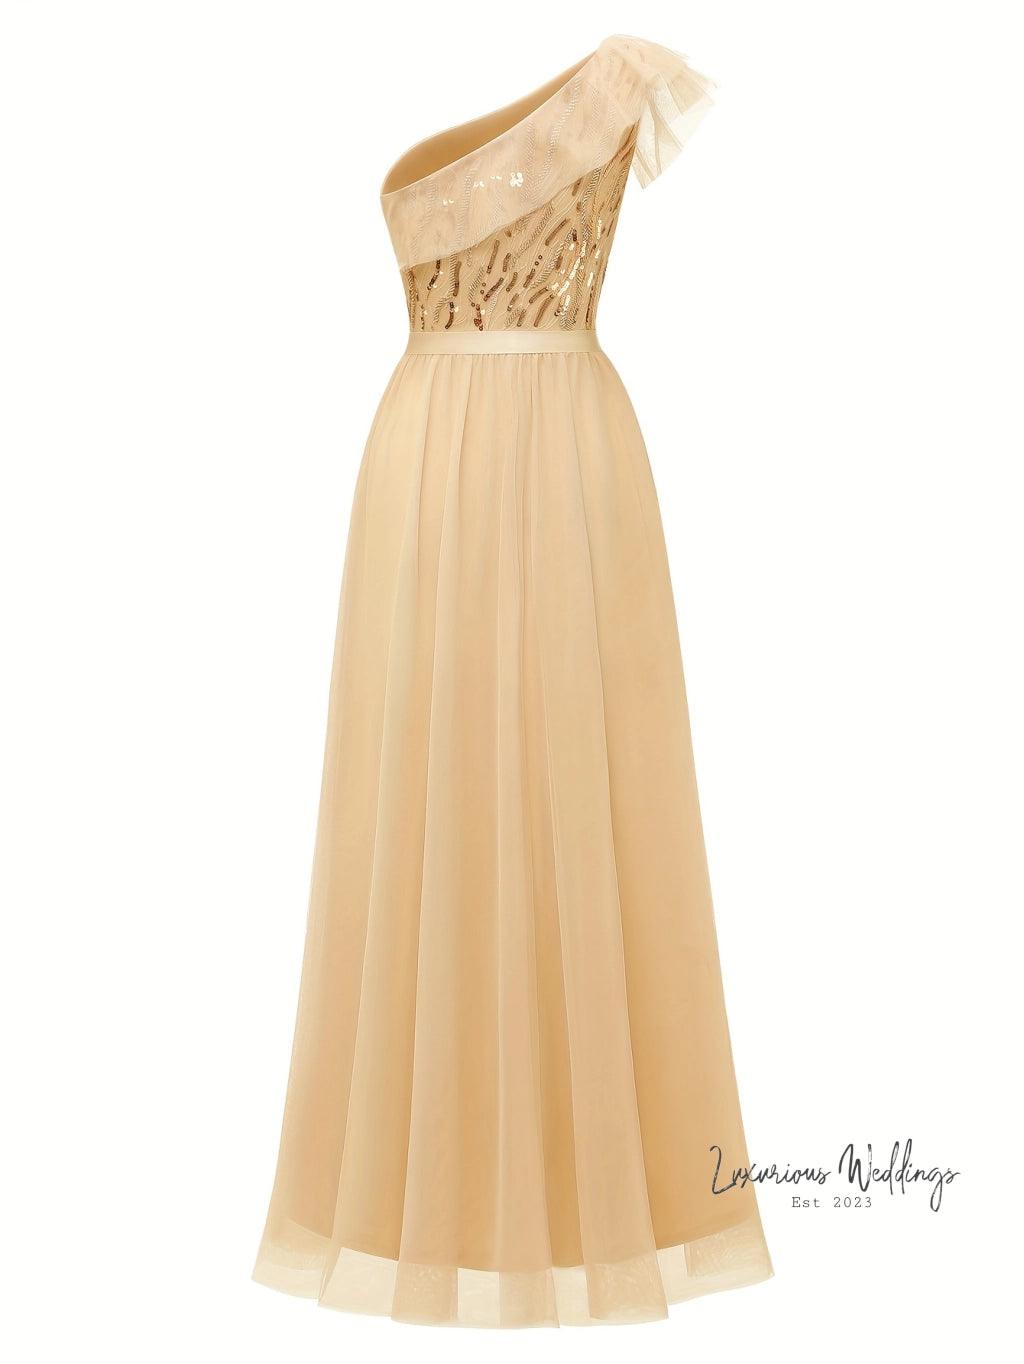 Stunning One-Shoulder Sequin Dress for Weddings - Women's A-Line Flutter Sleeve - Luxurious Weddings